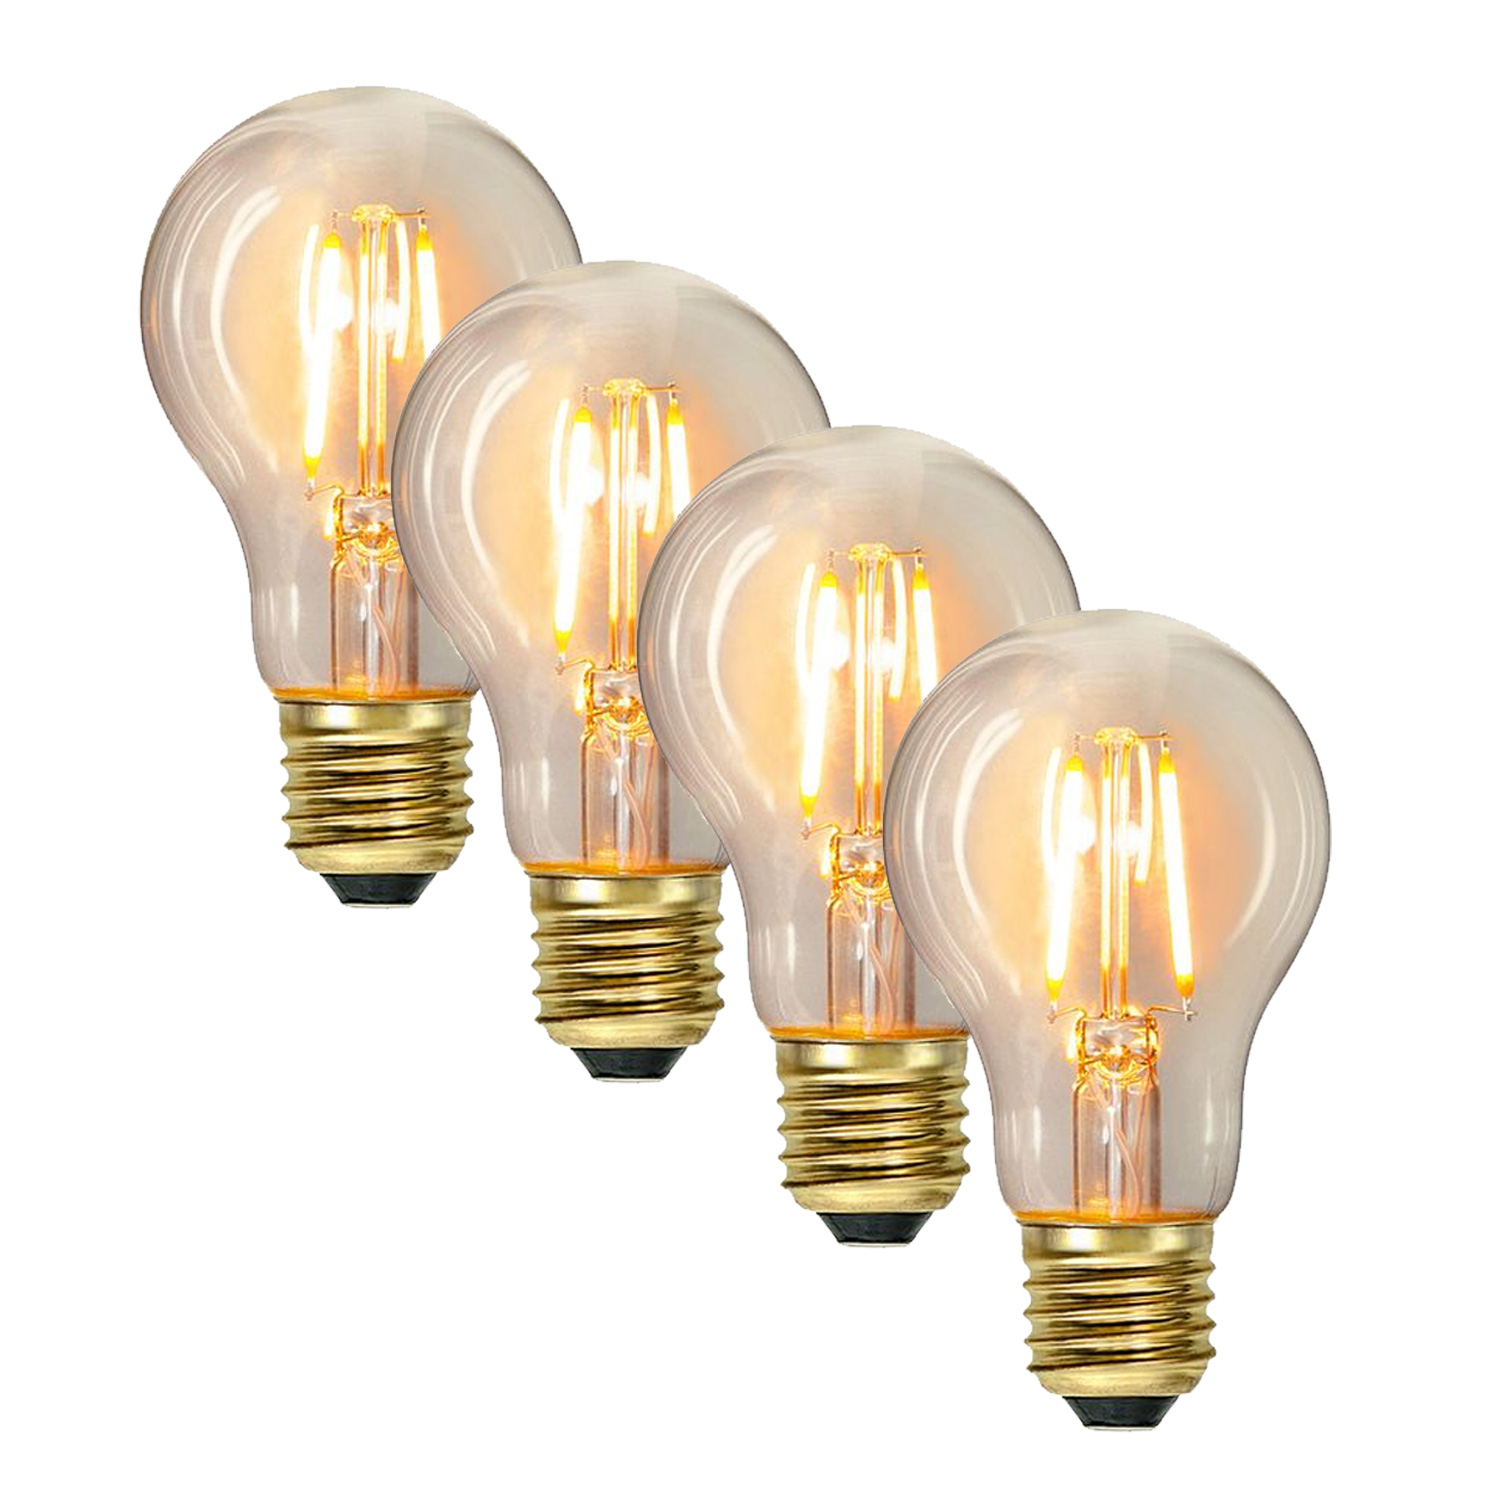 Illu-/Partylichterkette 30m - Außenlichterkette weiß - Made in Germany- 30 Edison LED Filamentlampen